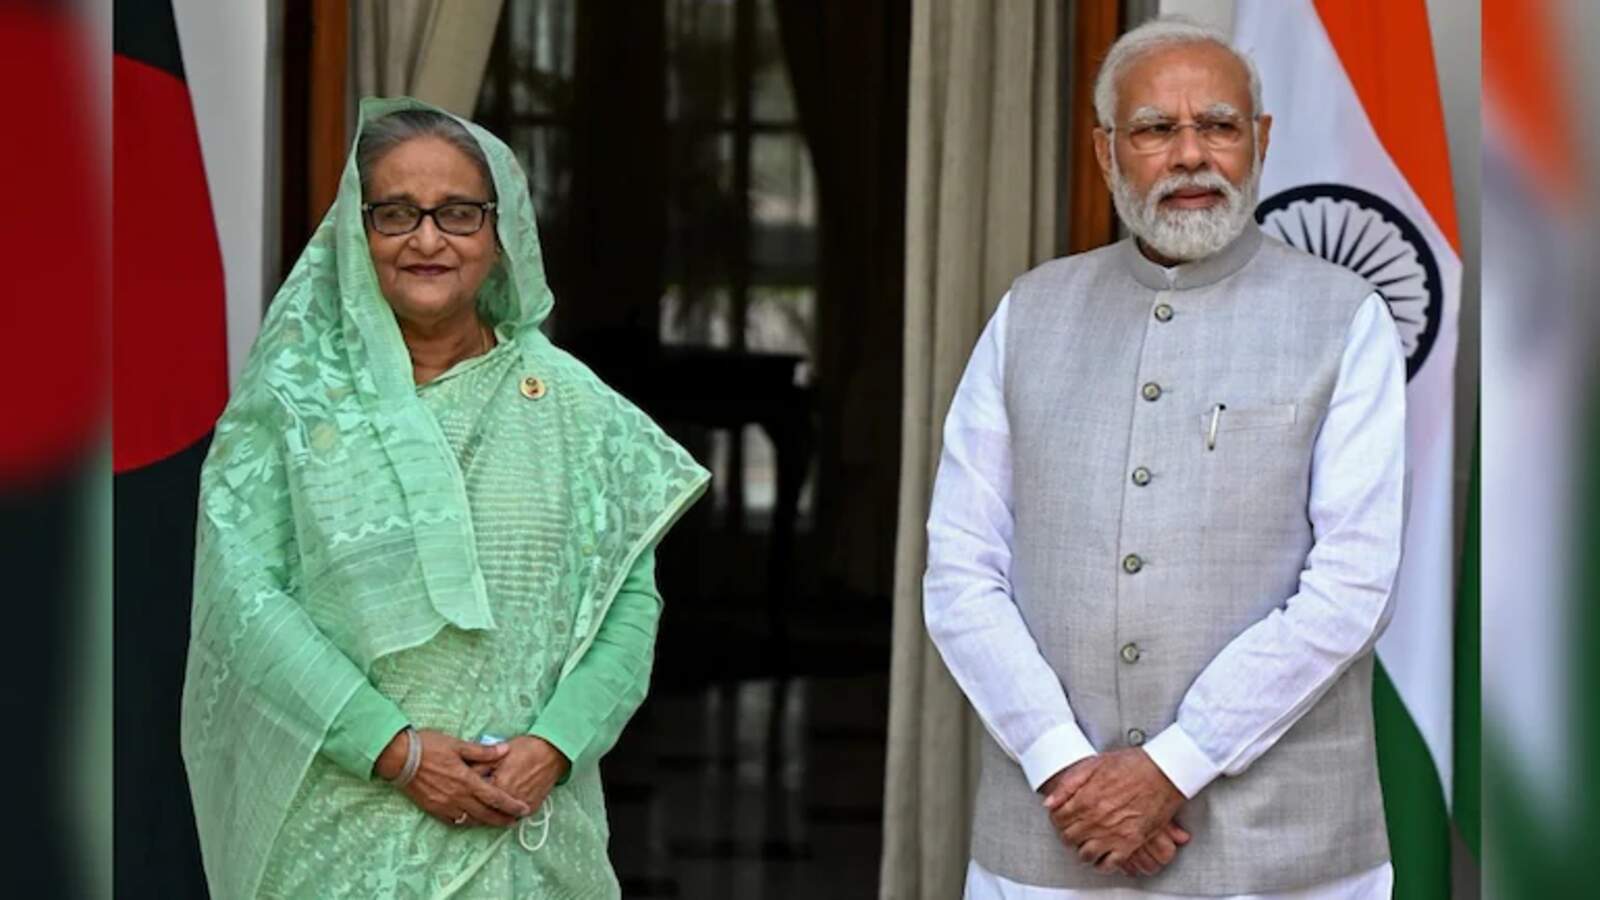 PM Modi meets Sheikh Hasina : मोदी 3.0 में पहली अतिथि बनी शेख हसीना, जल संकट पर मांगी मदद